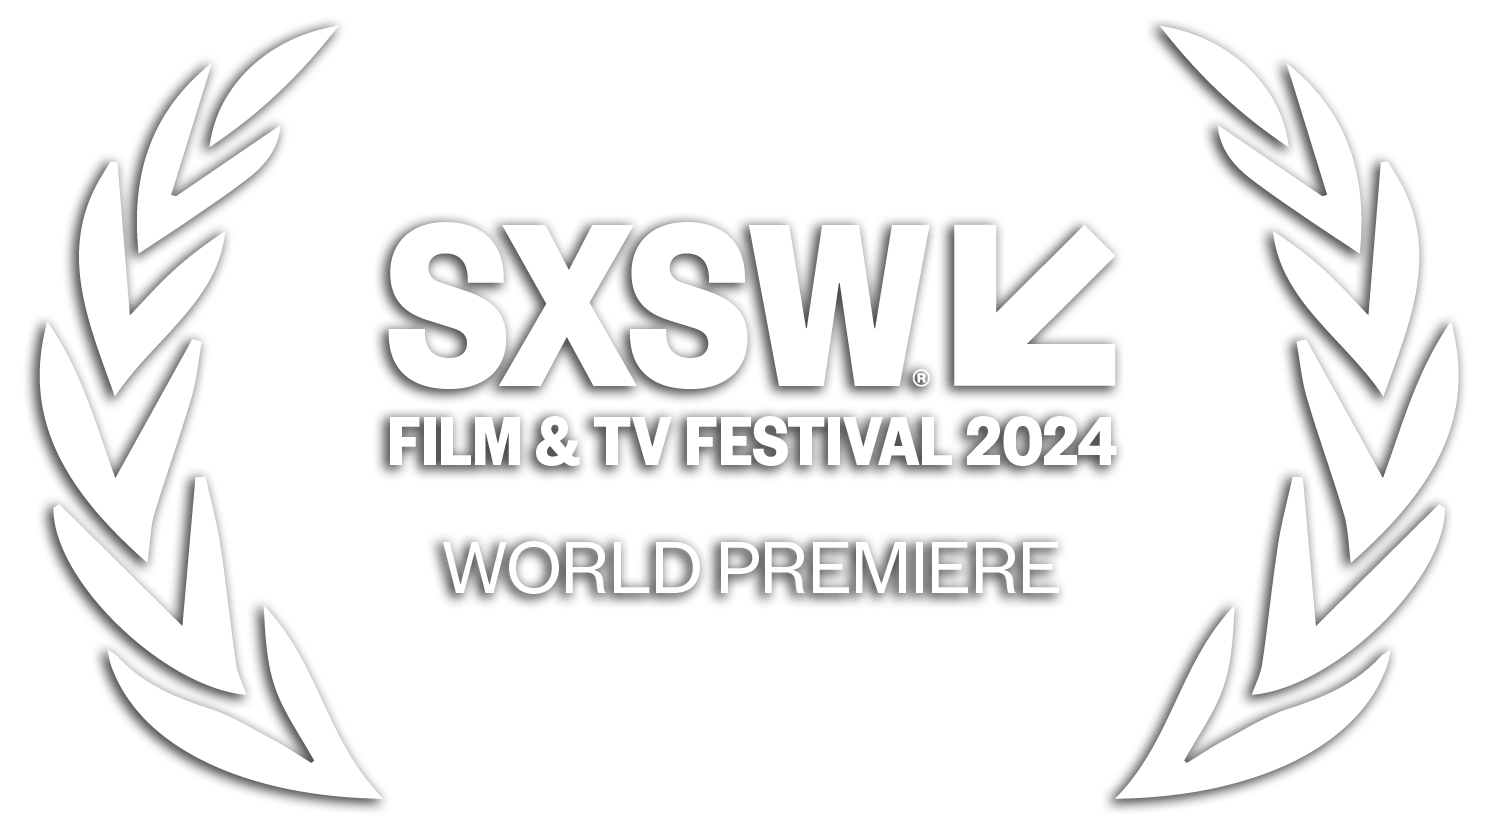 SXSW 2024 World Premiere